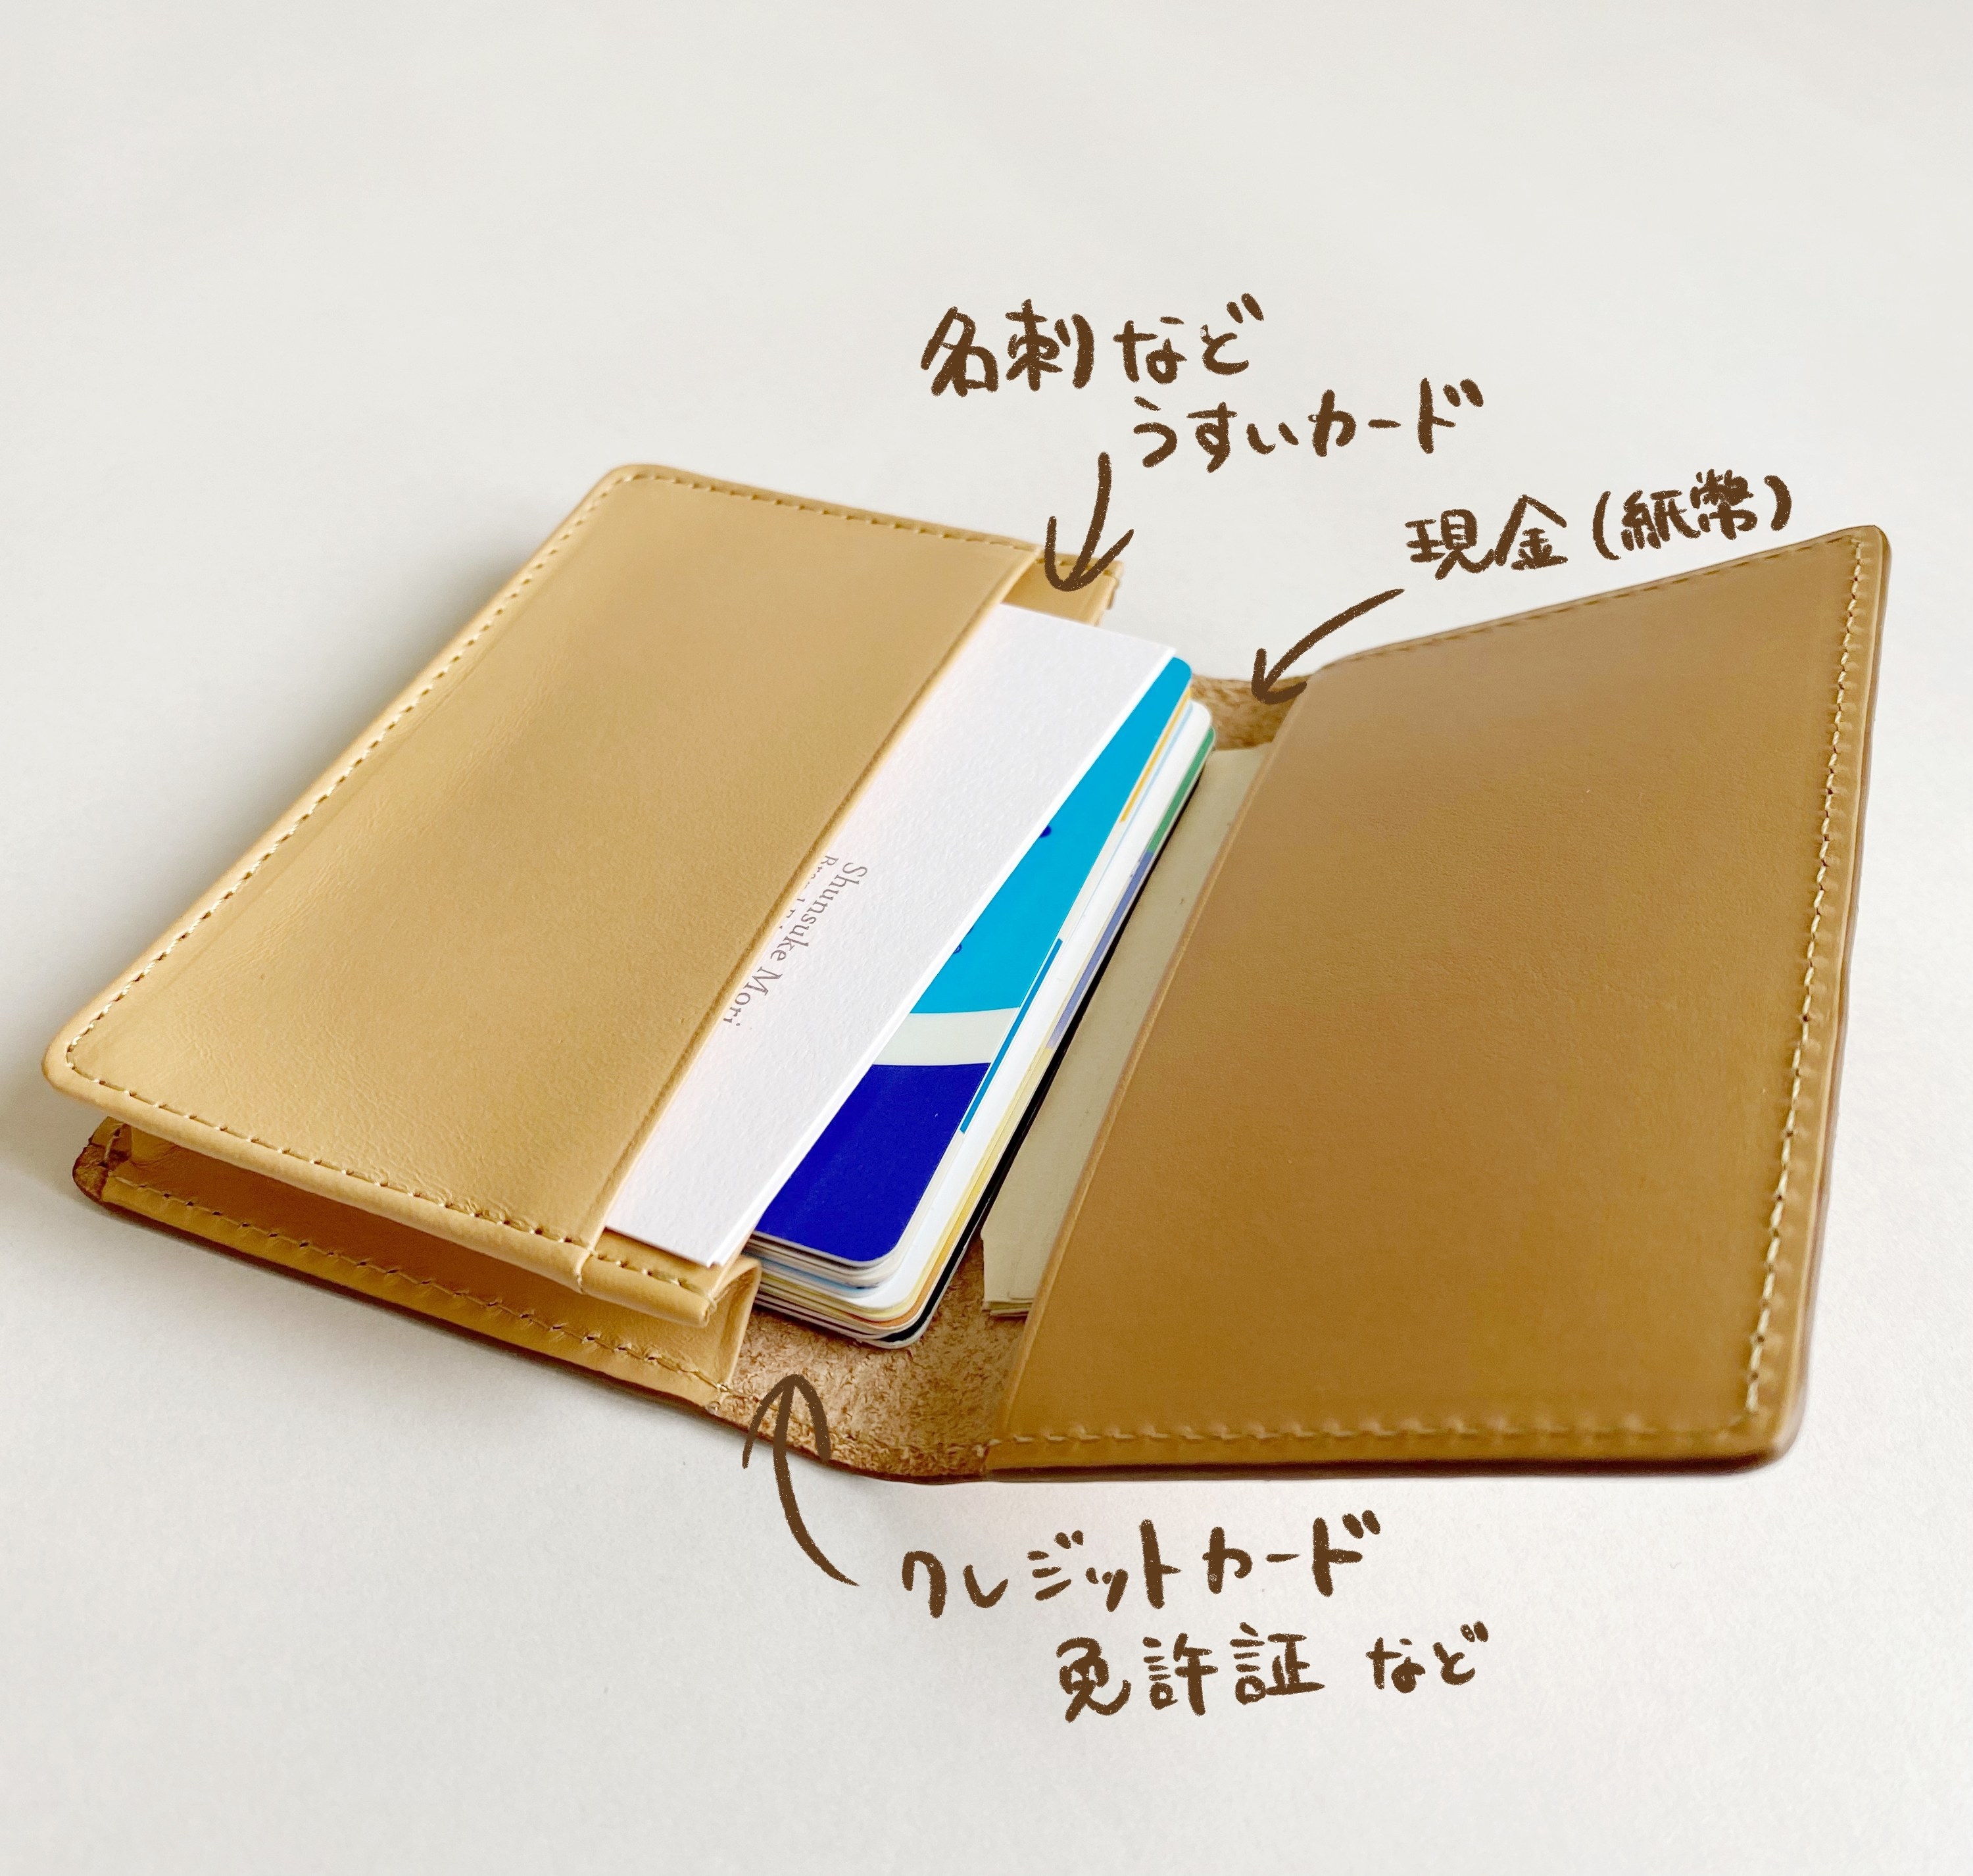 無印良品 イタリア産ヌメ革カードケース - 折り財布